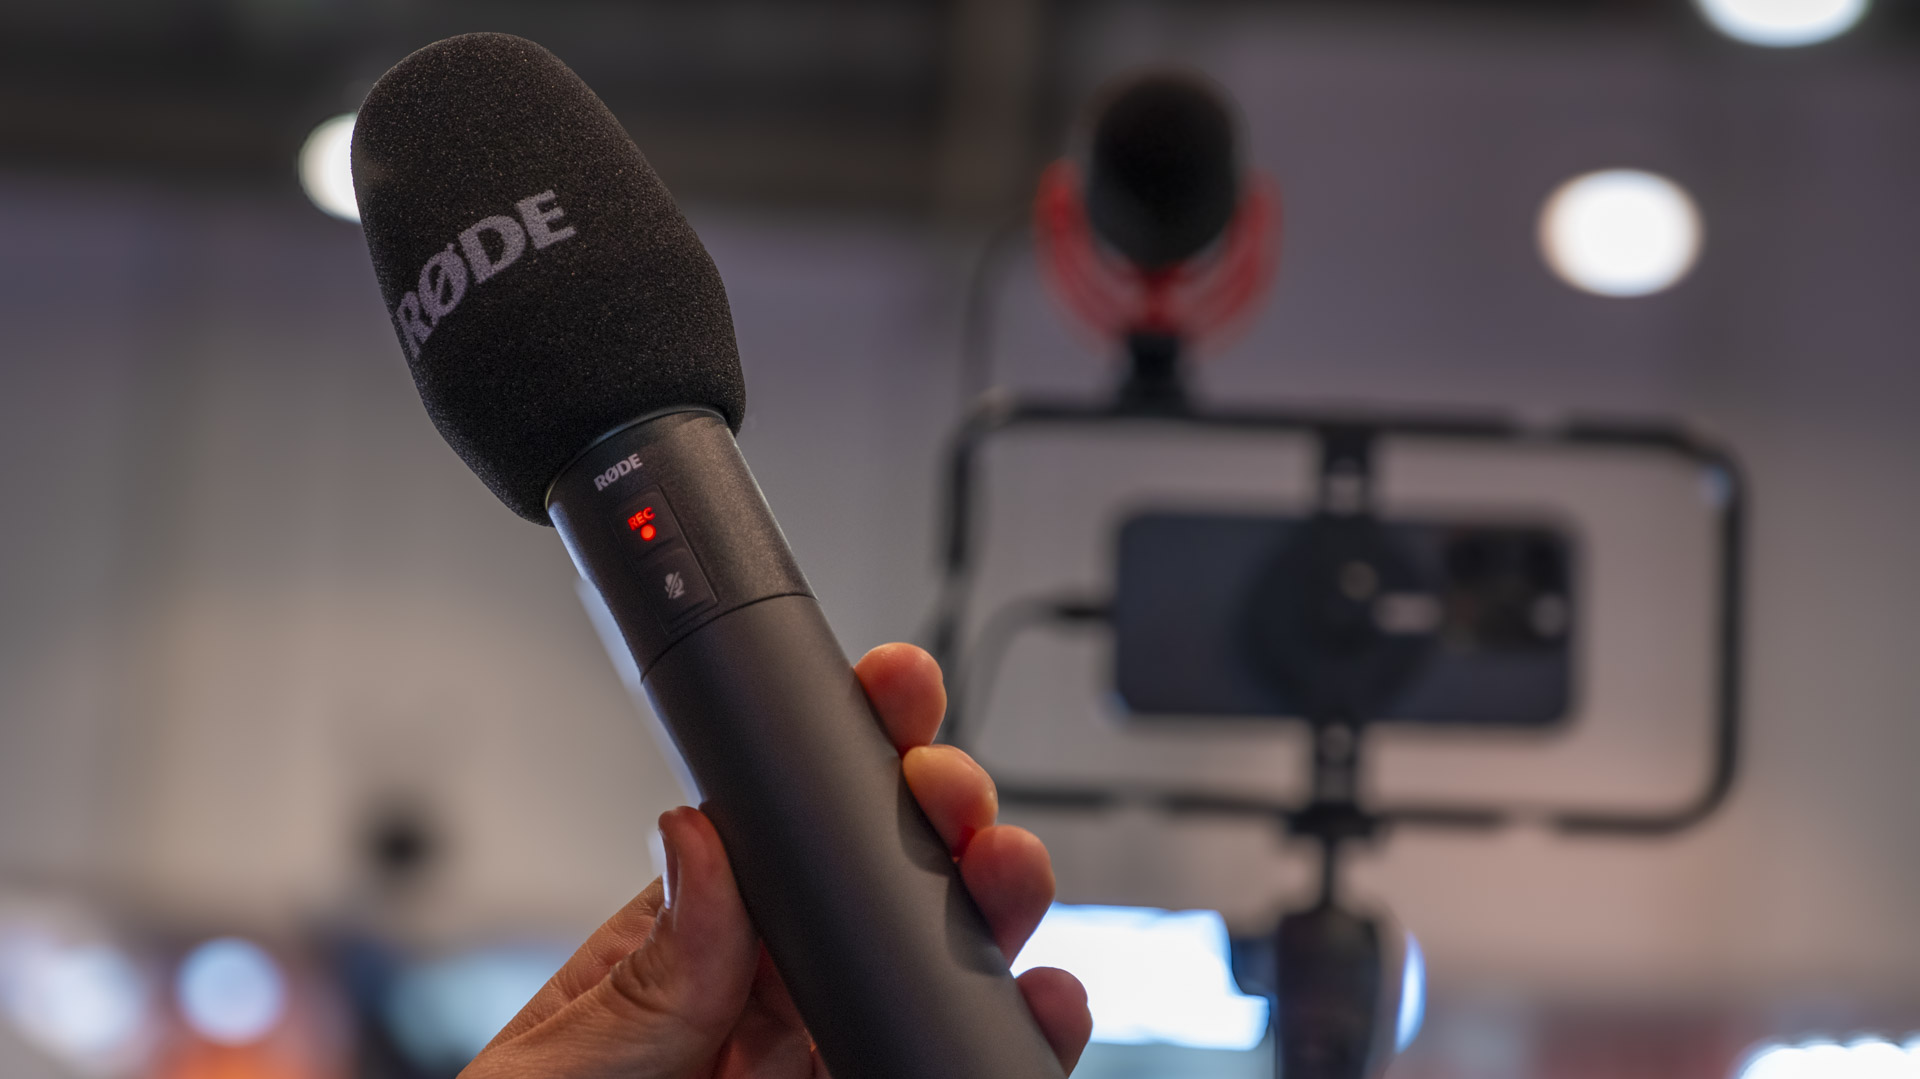 RØDE Interview PRO spiega il microfono wireless e l'hardware dello smartphone